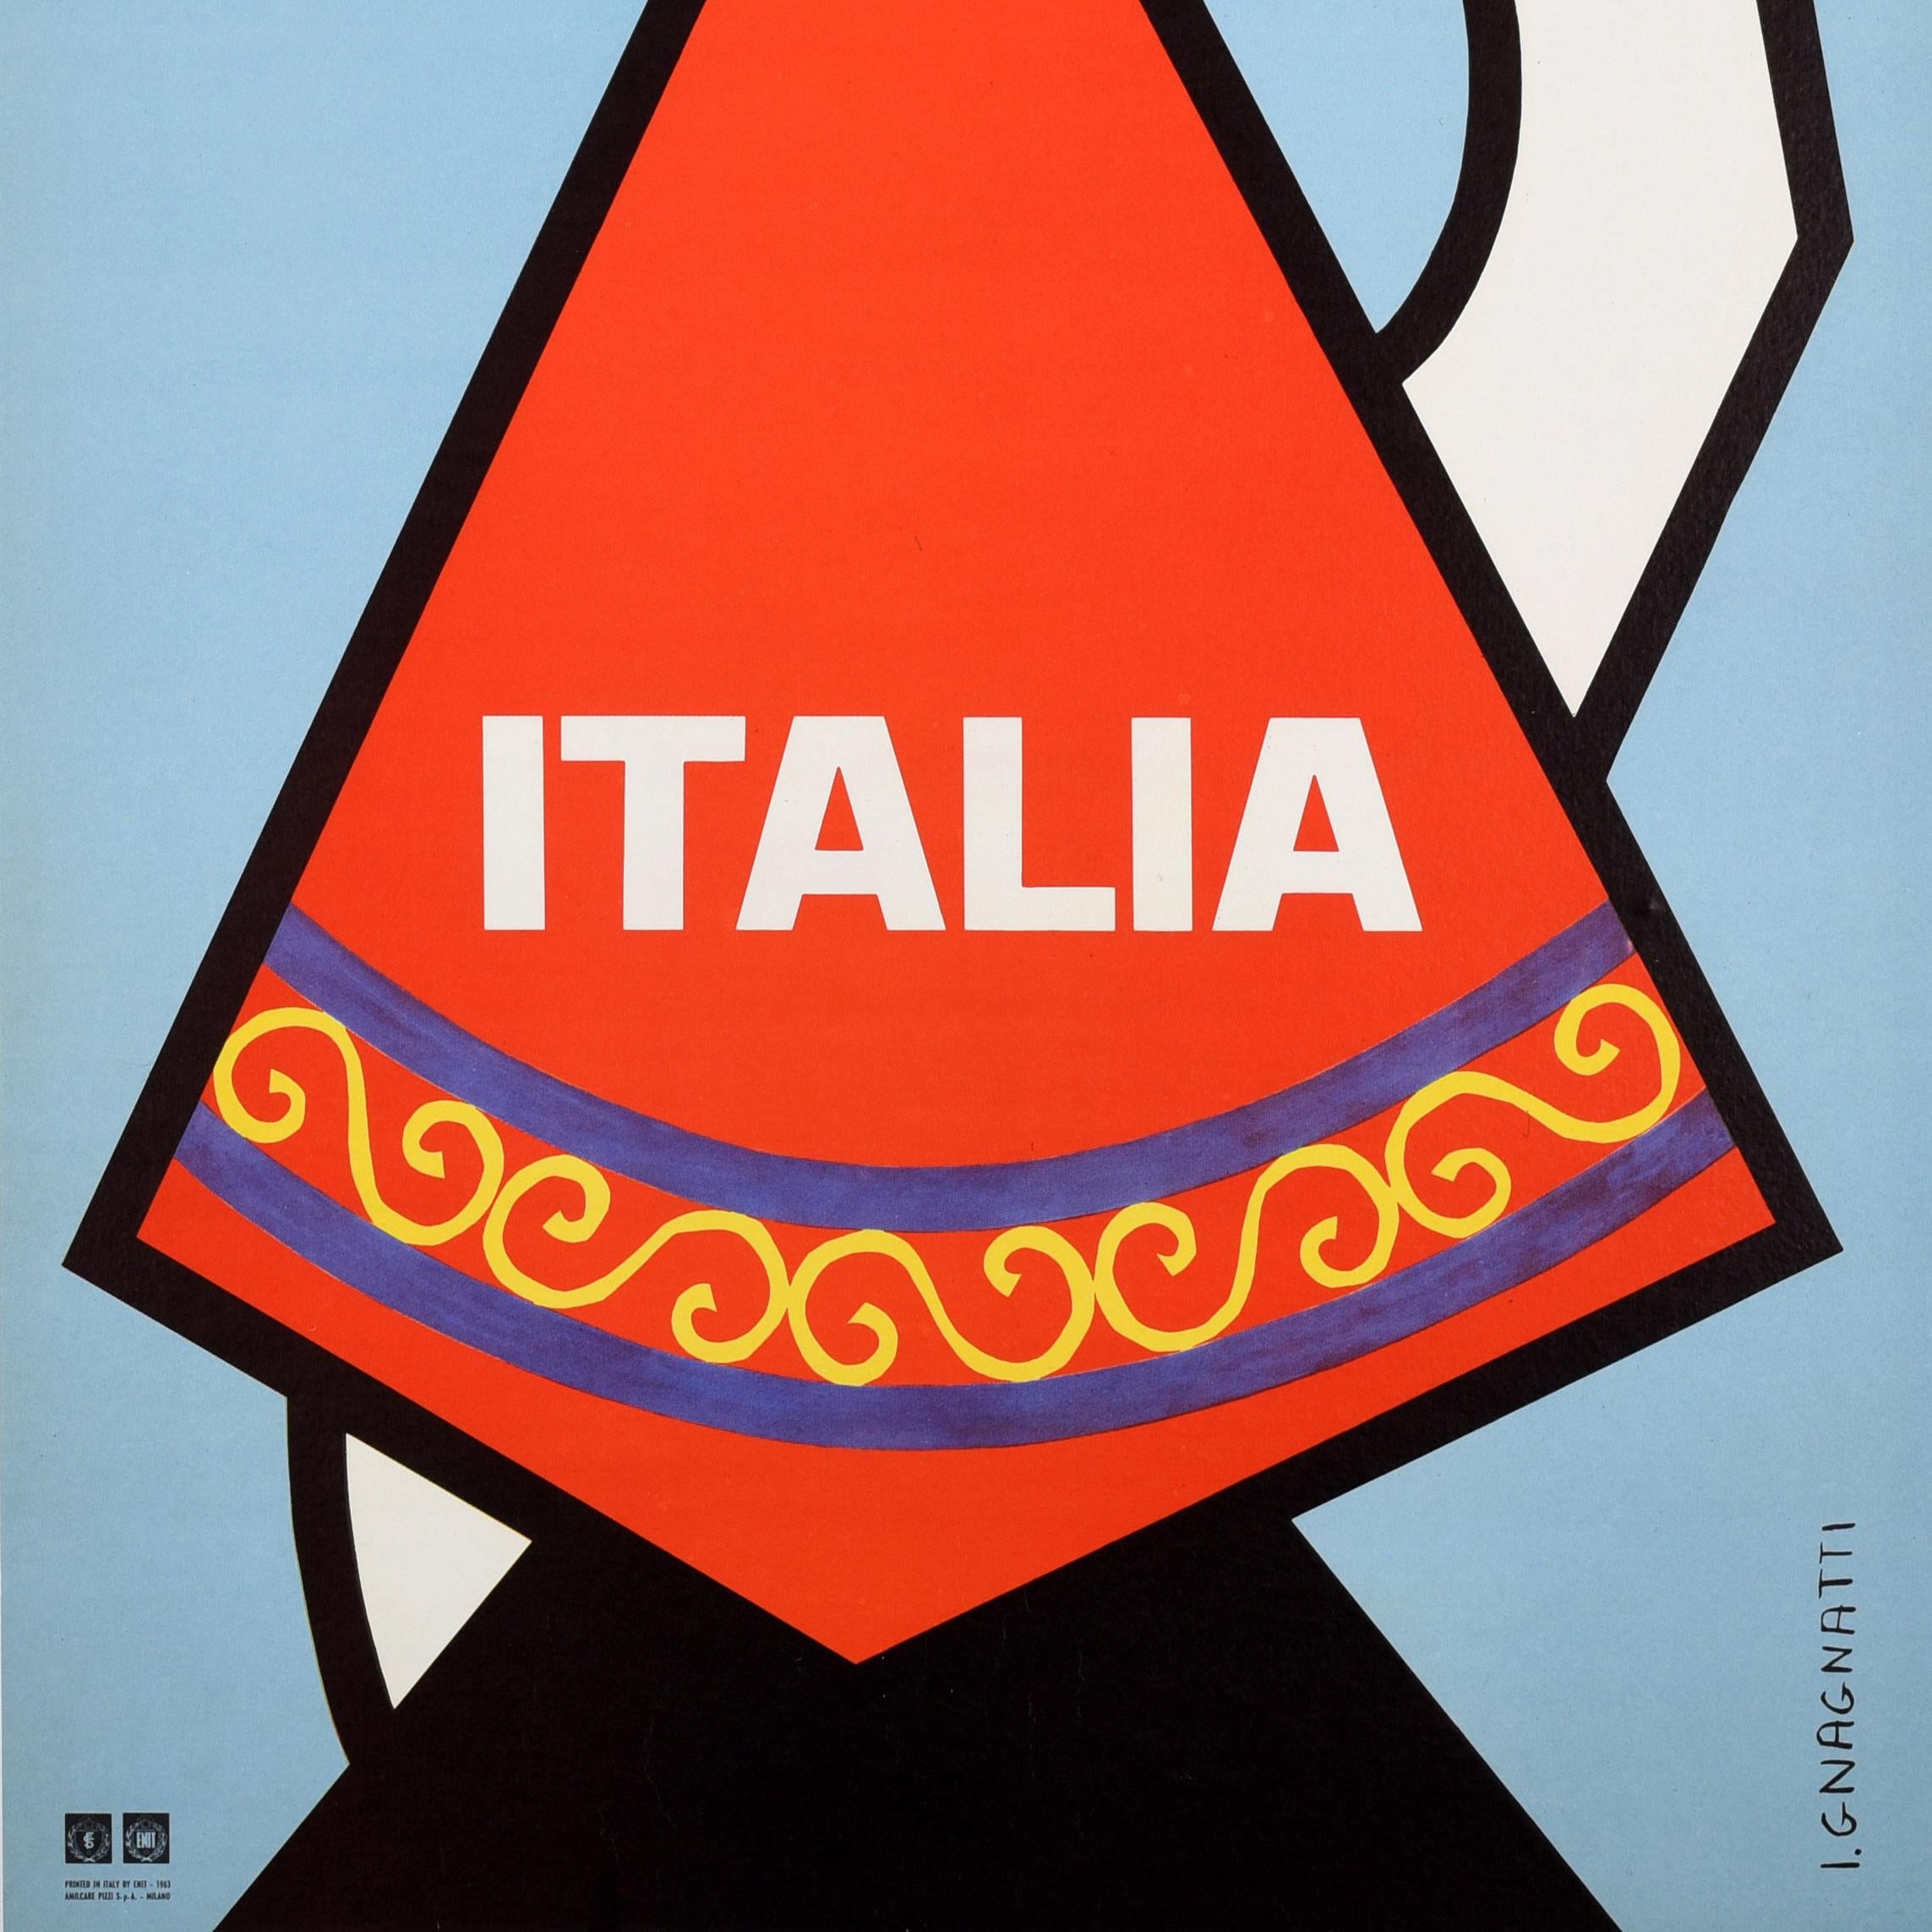 Original Vintage-Reiseplakat für Italien / Italia, herausgegeben vom italienischen Fremdenverkehrsamt ENIT (Ente Nazionale Italiano per il Turismo), mit einem farbenfrohen Motiv aus der Mitte des Jahrhunderts, das eine Dame mit einem gemusterten